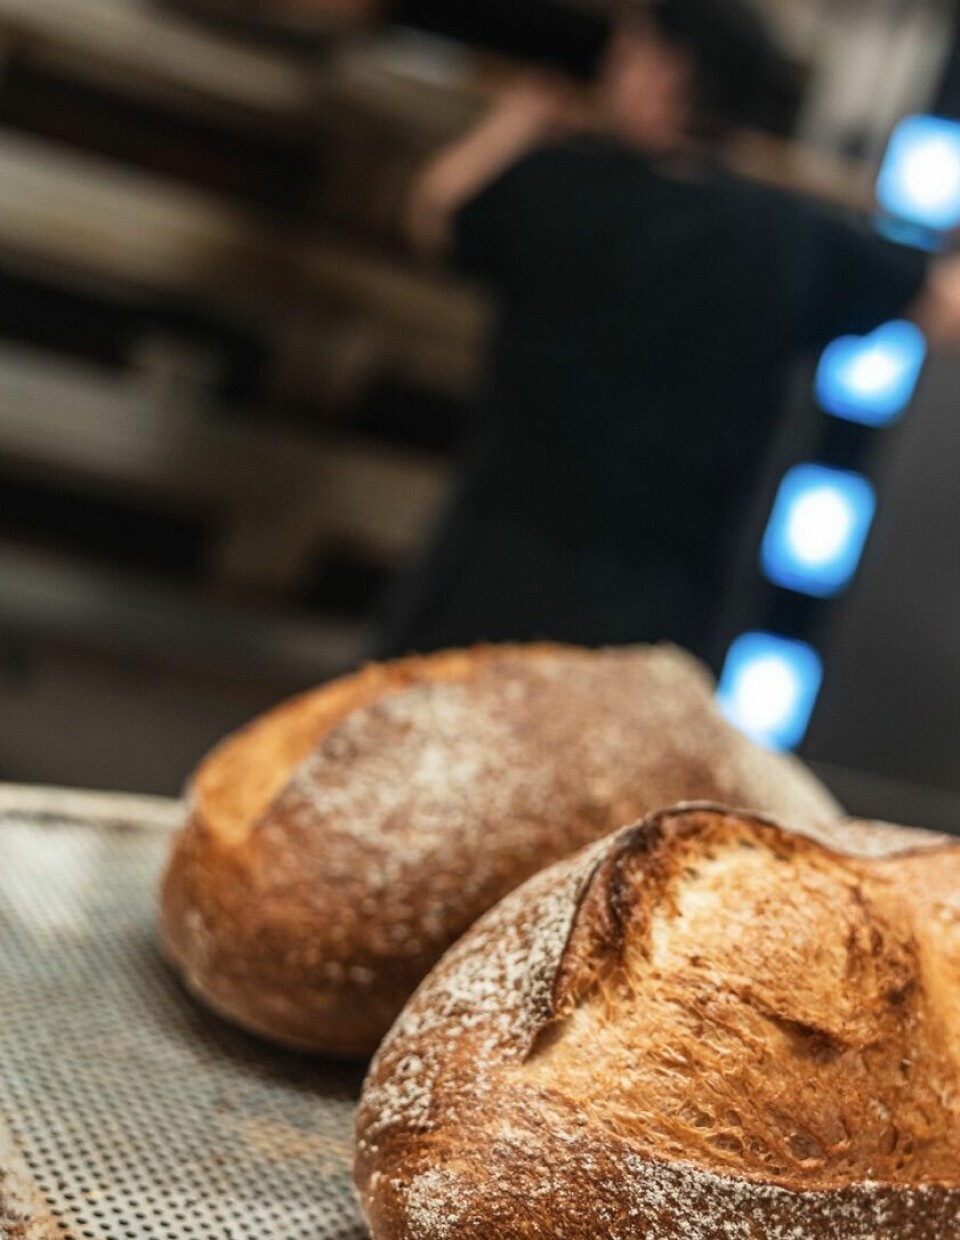 Brustadbakeren produserer et bredt spekter av brød og andre bakervarer.